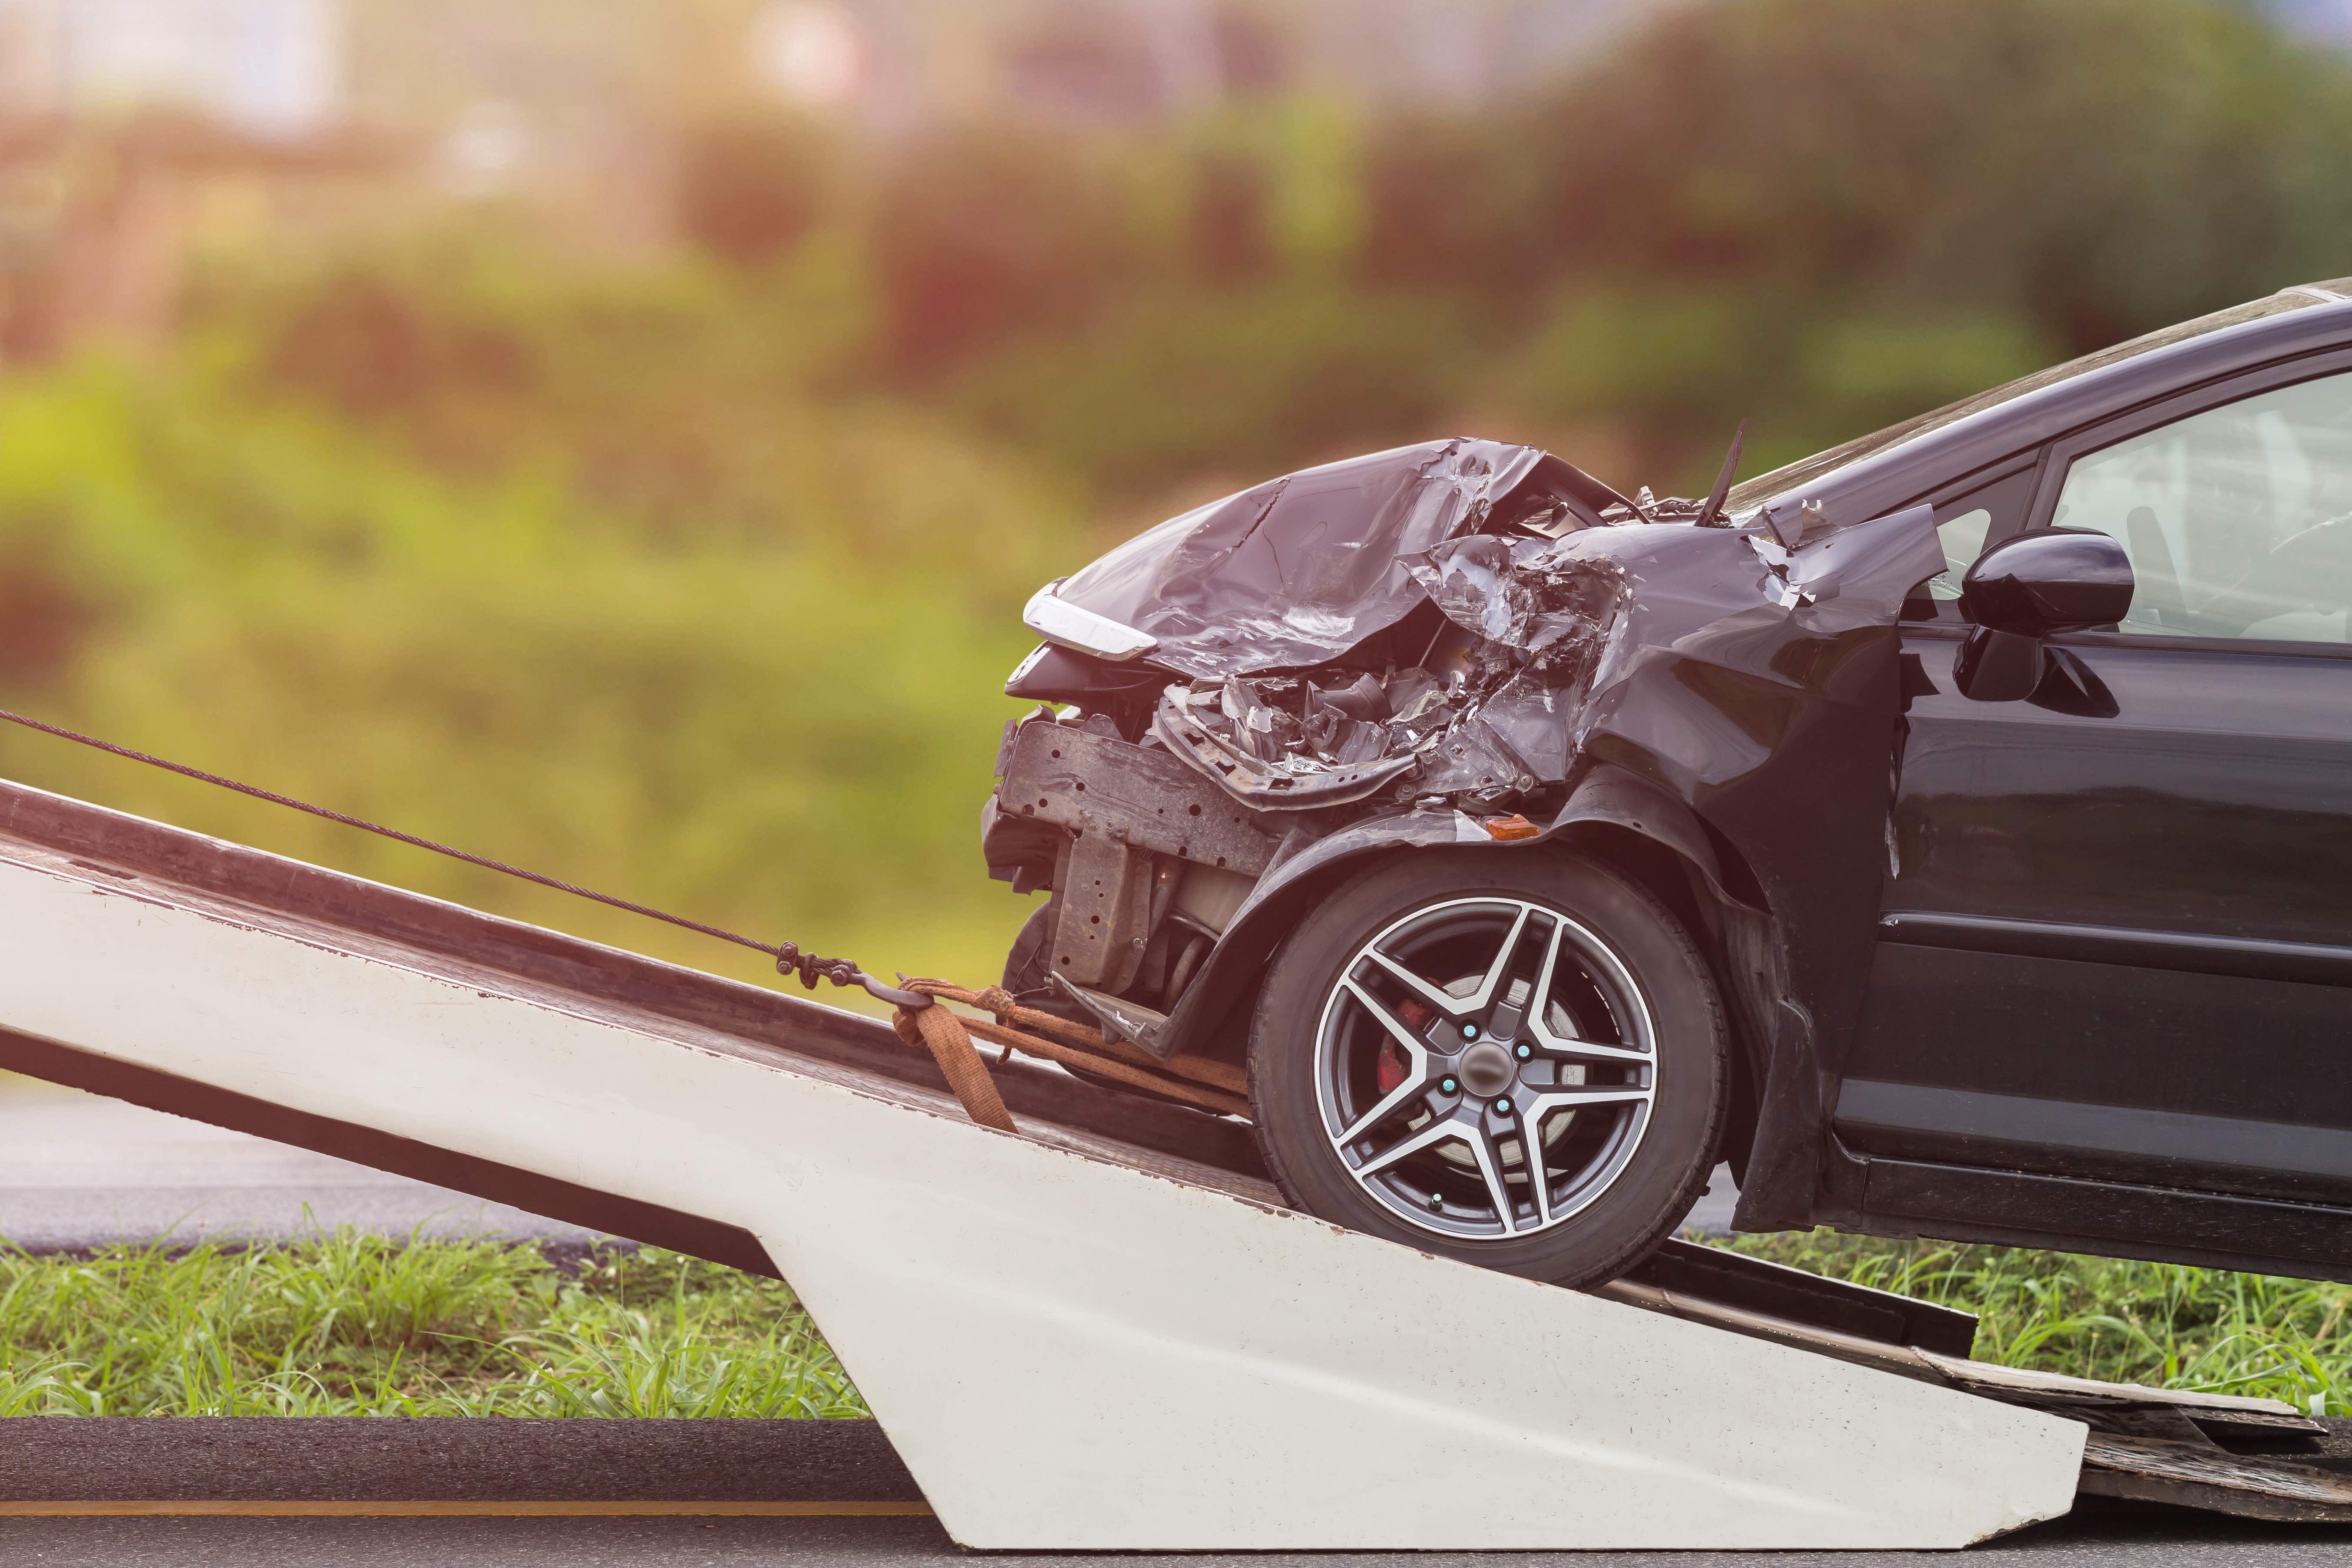 ¿Cómo hacer un reporte ante un accidente de tránsito?